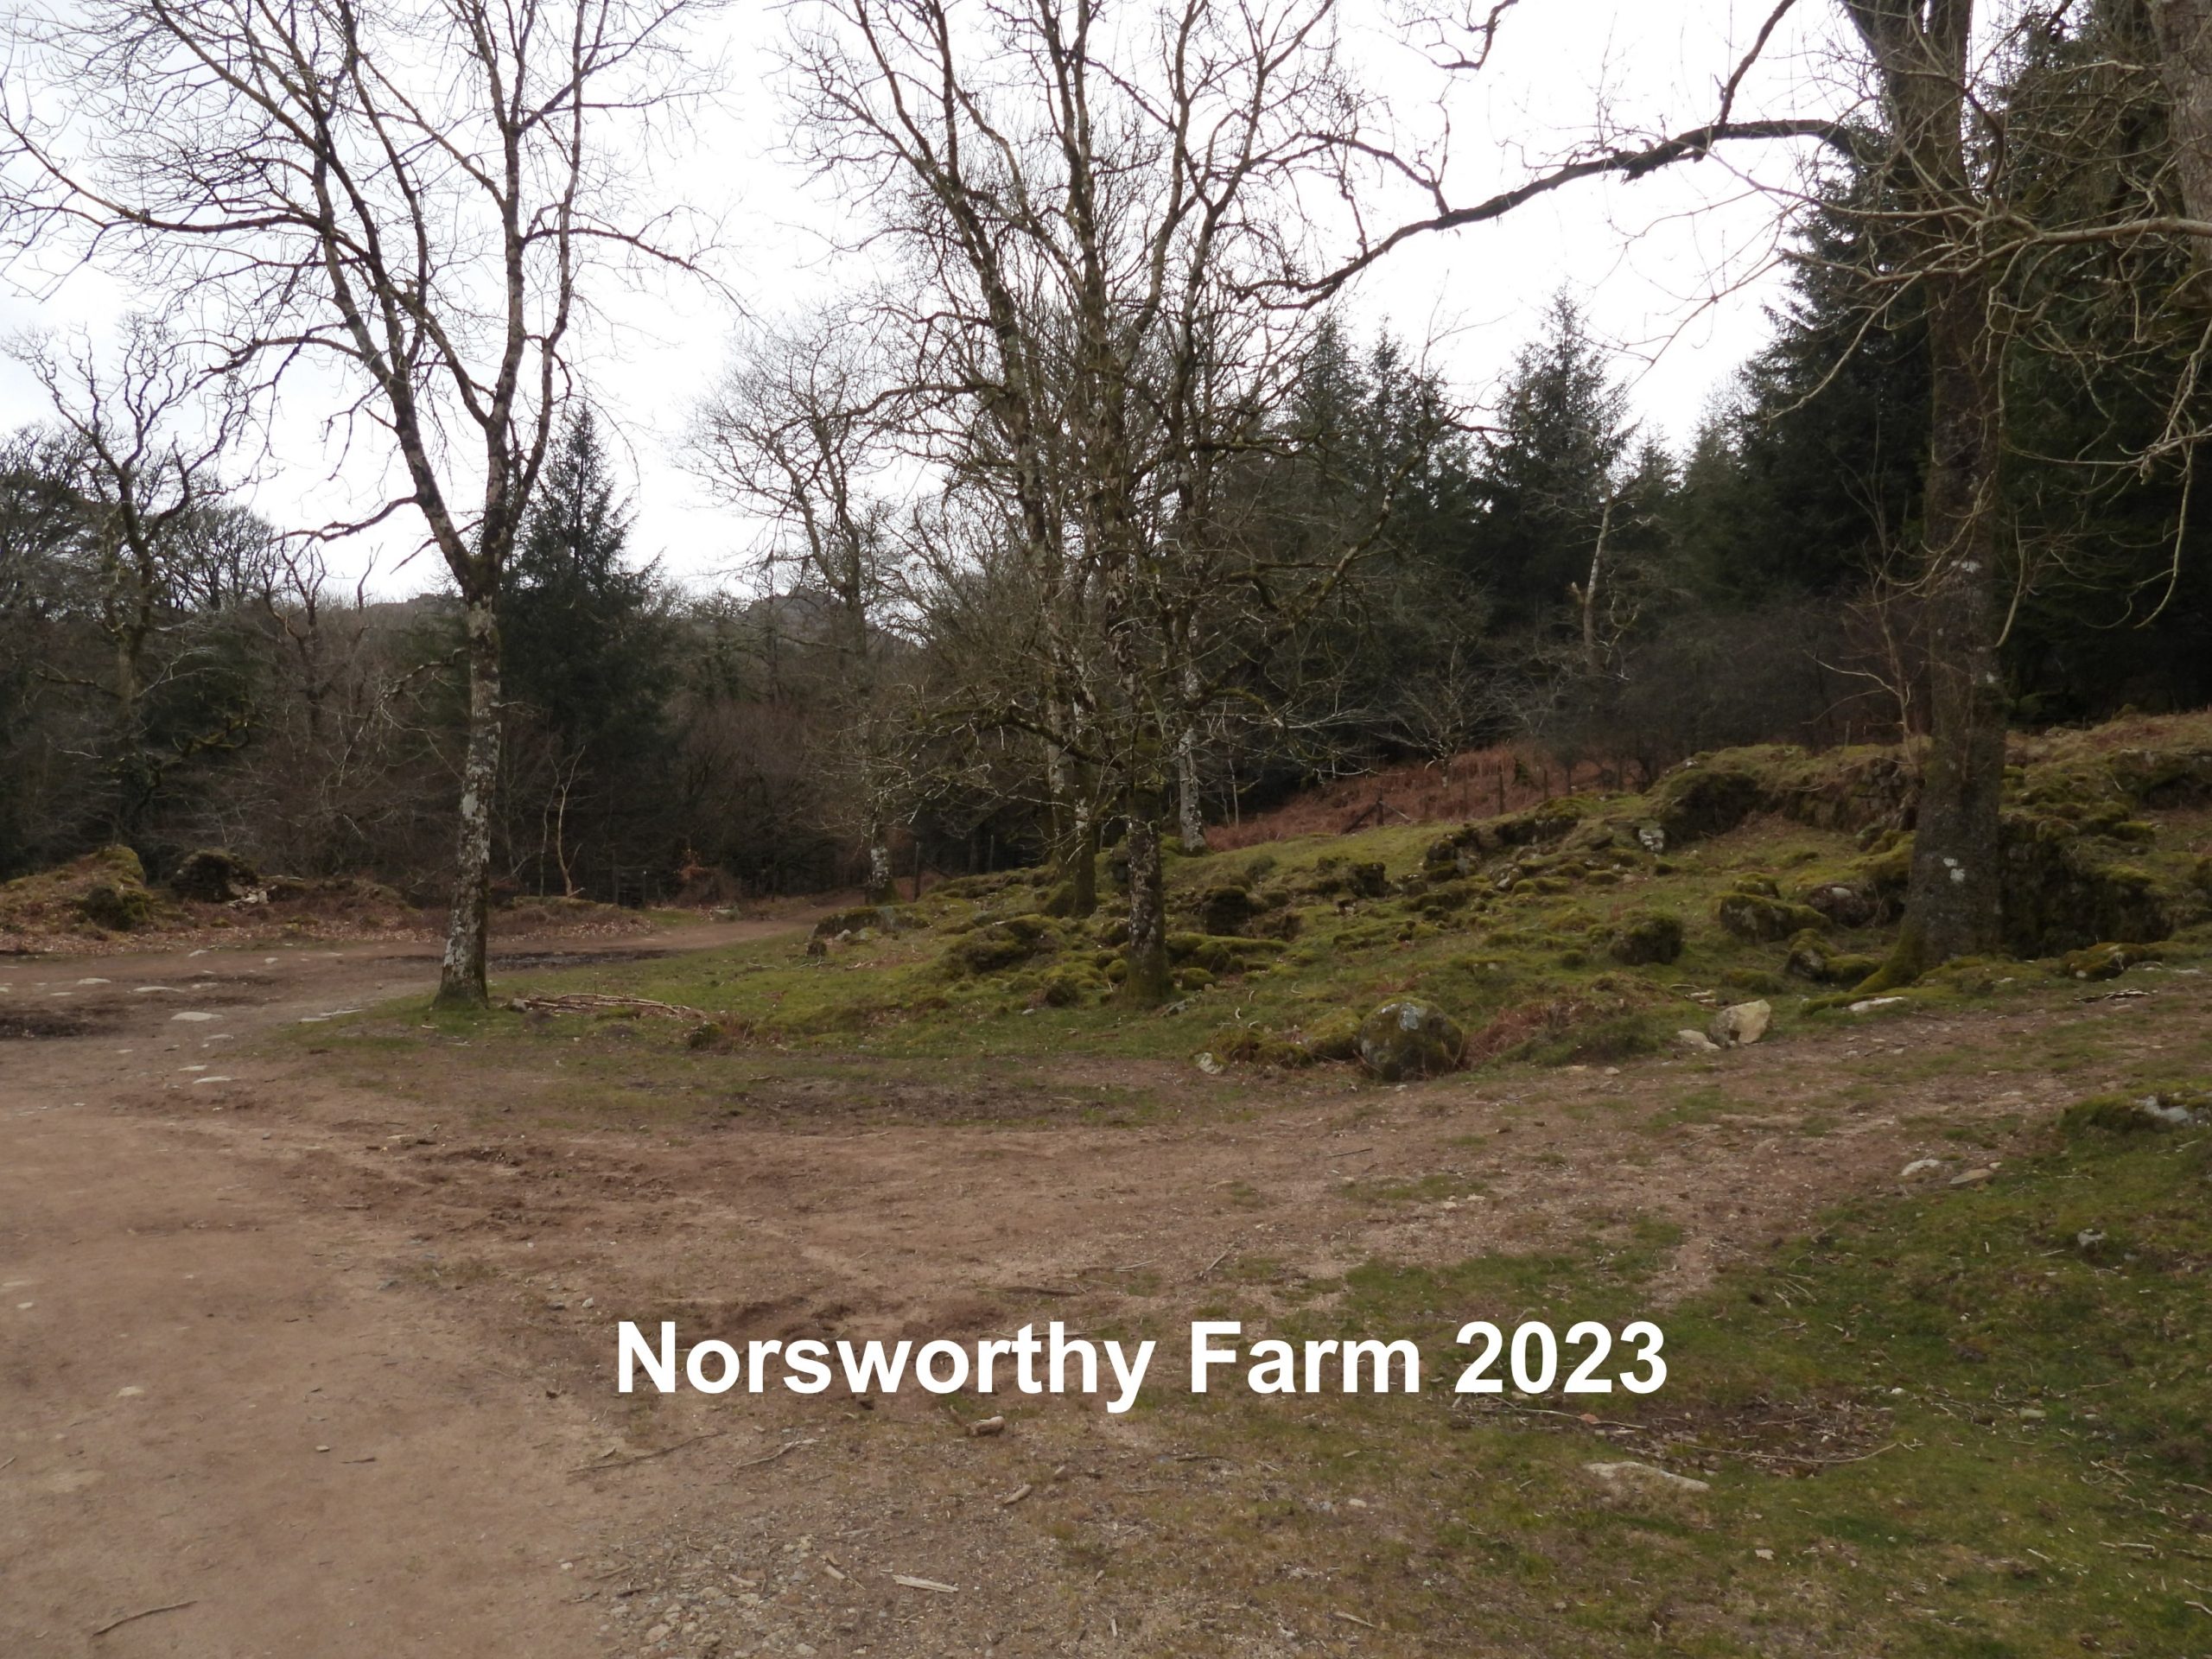 2. Norsworthy 2023